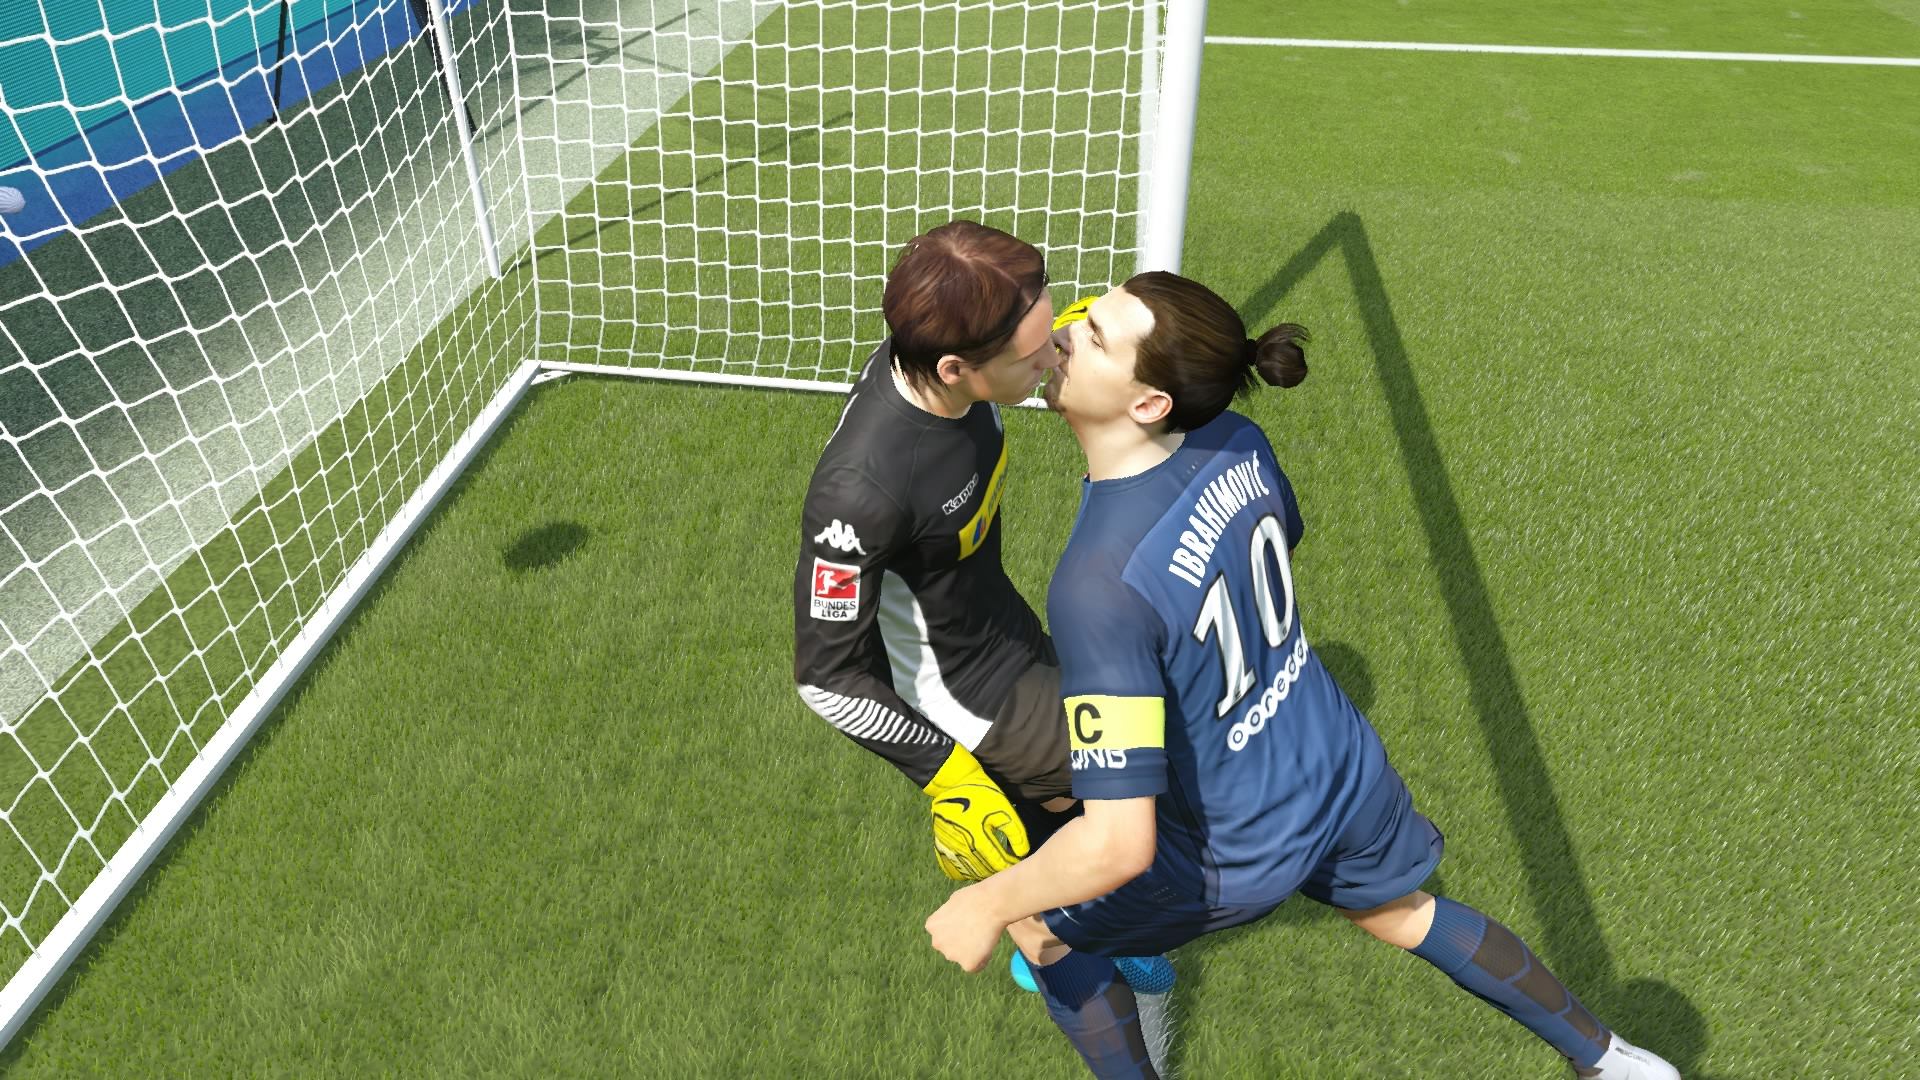 True love in FIFA 16!, gamingreddit.com